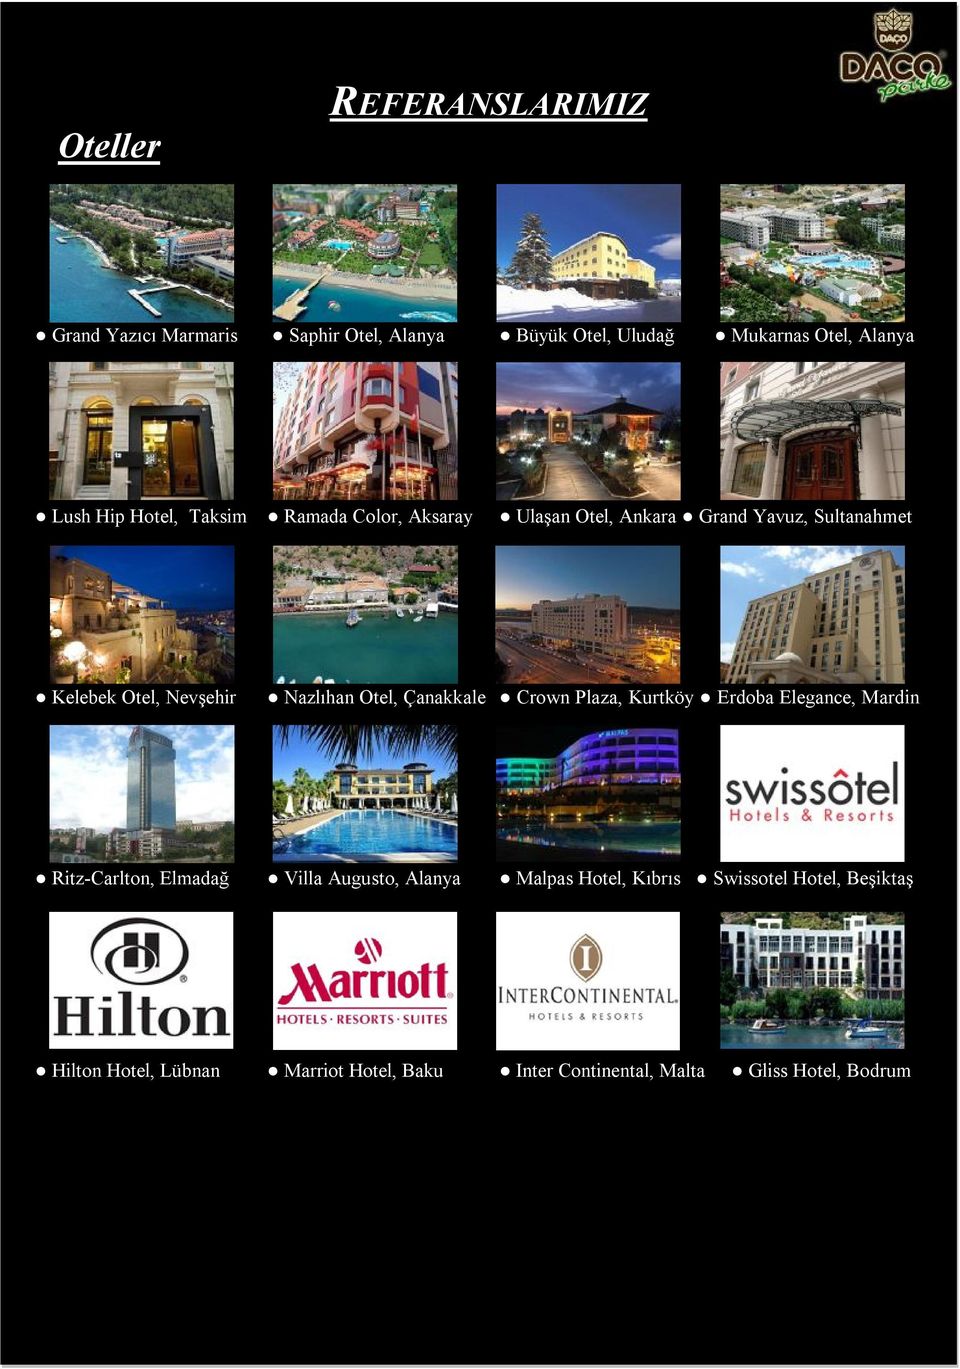 Otel, Çanakkale Crown Plaza, Kurtköy Erdoba Elegance, Mardin Ritz-Carlton, Elmadağ Villa Augusto, Alanya Malpas